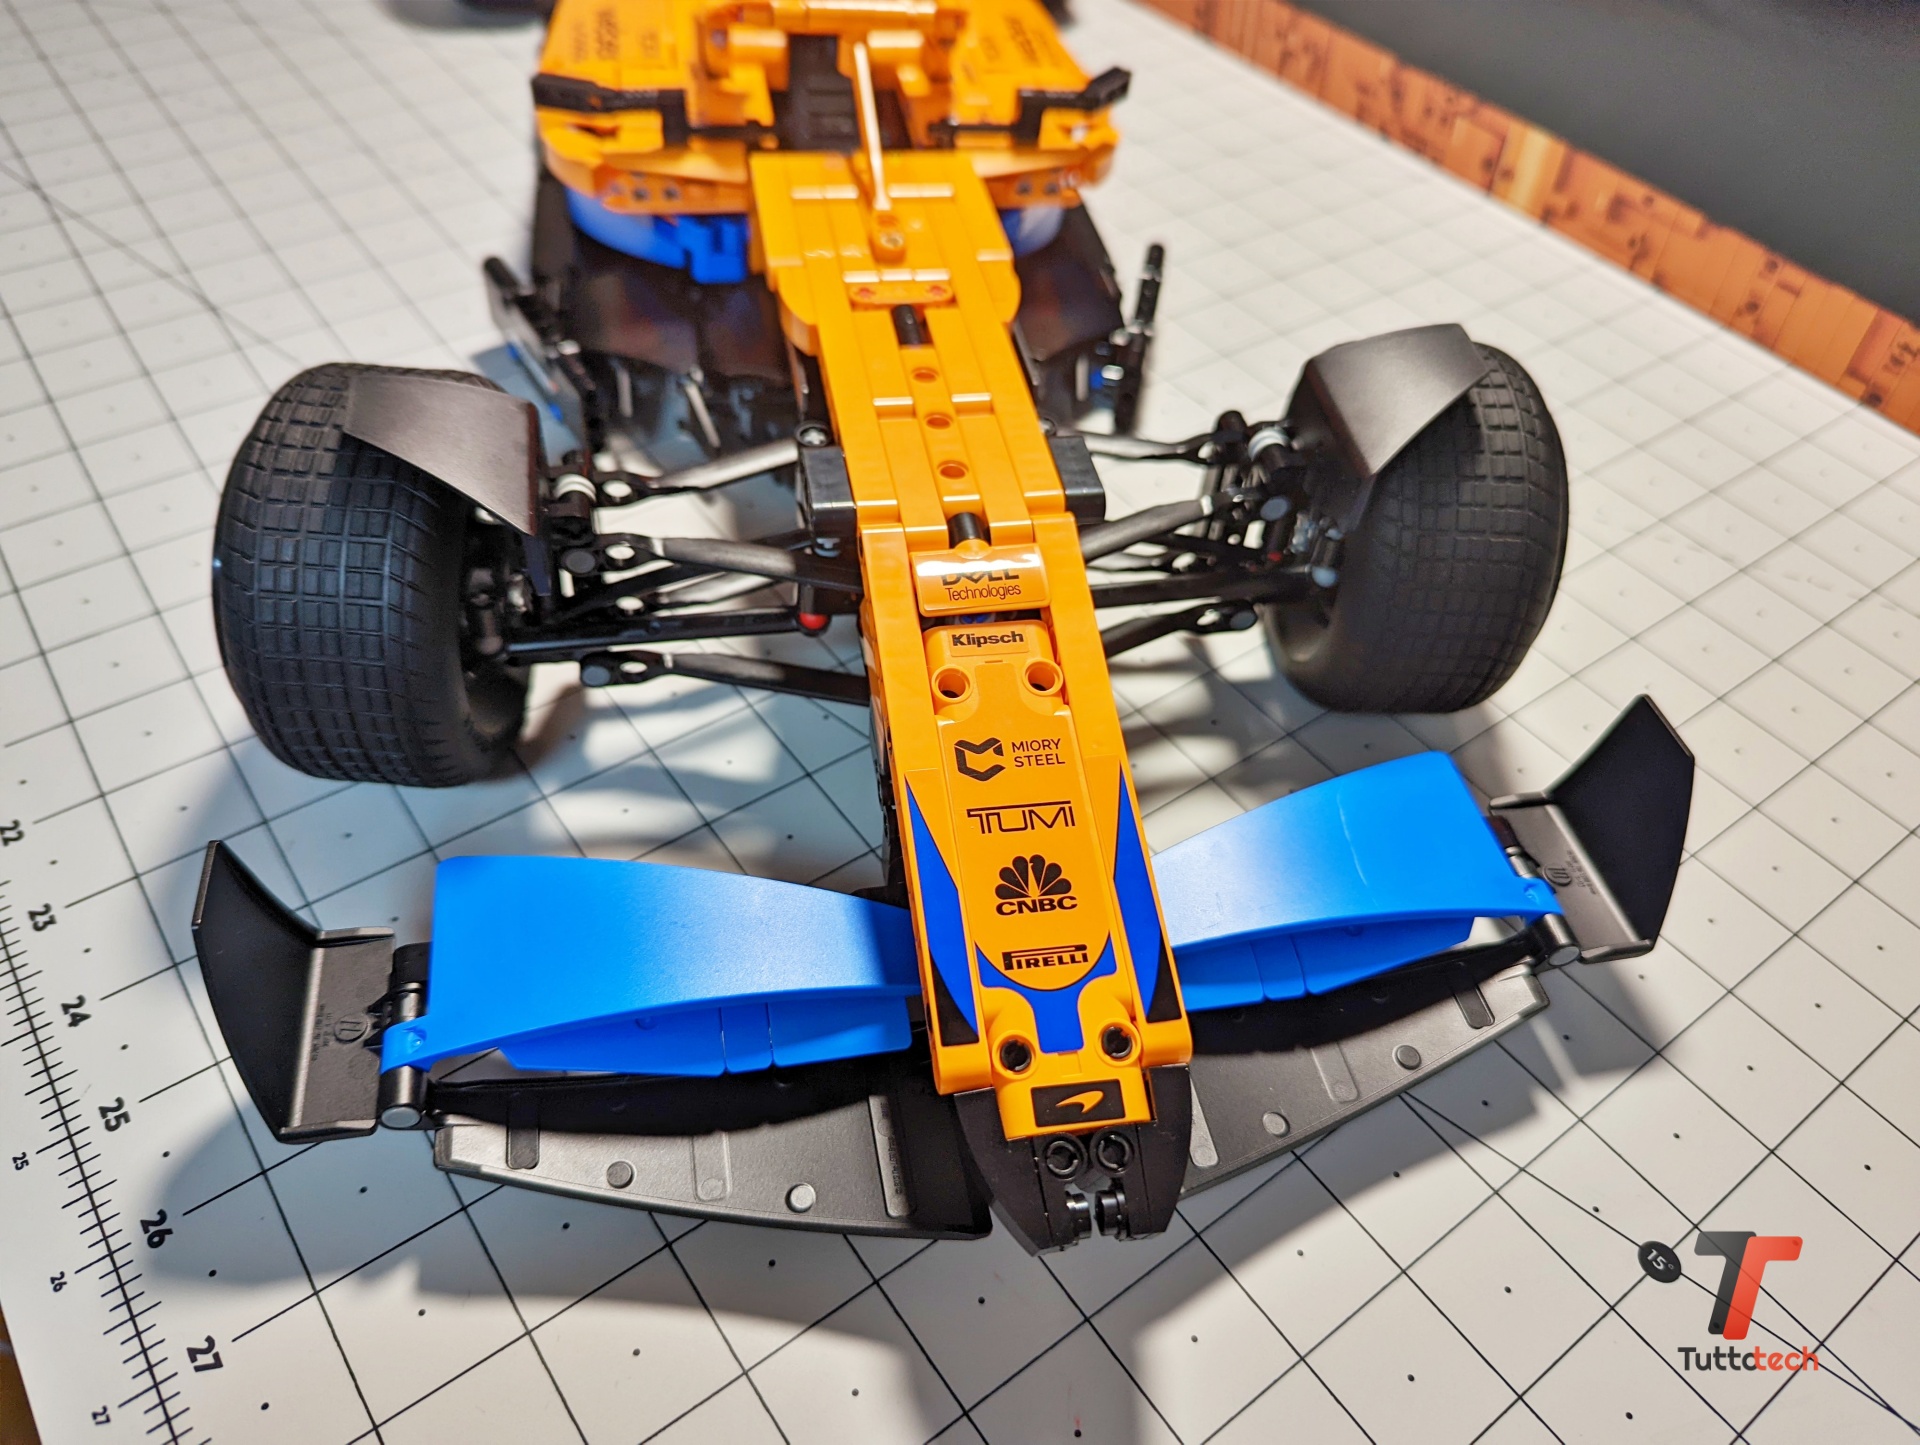 LEGO McLaren F1